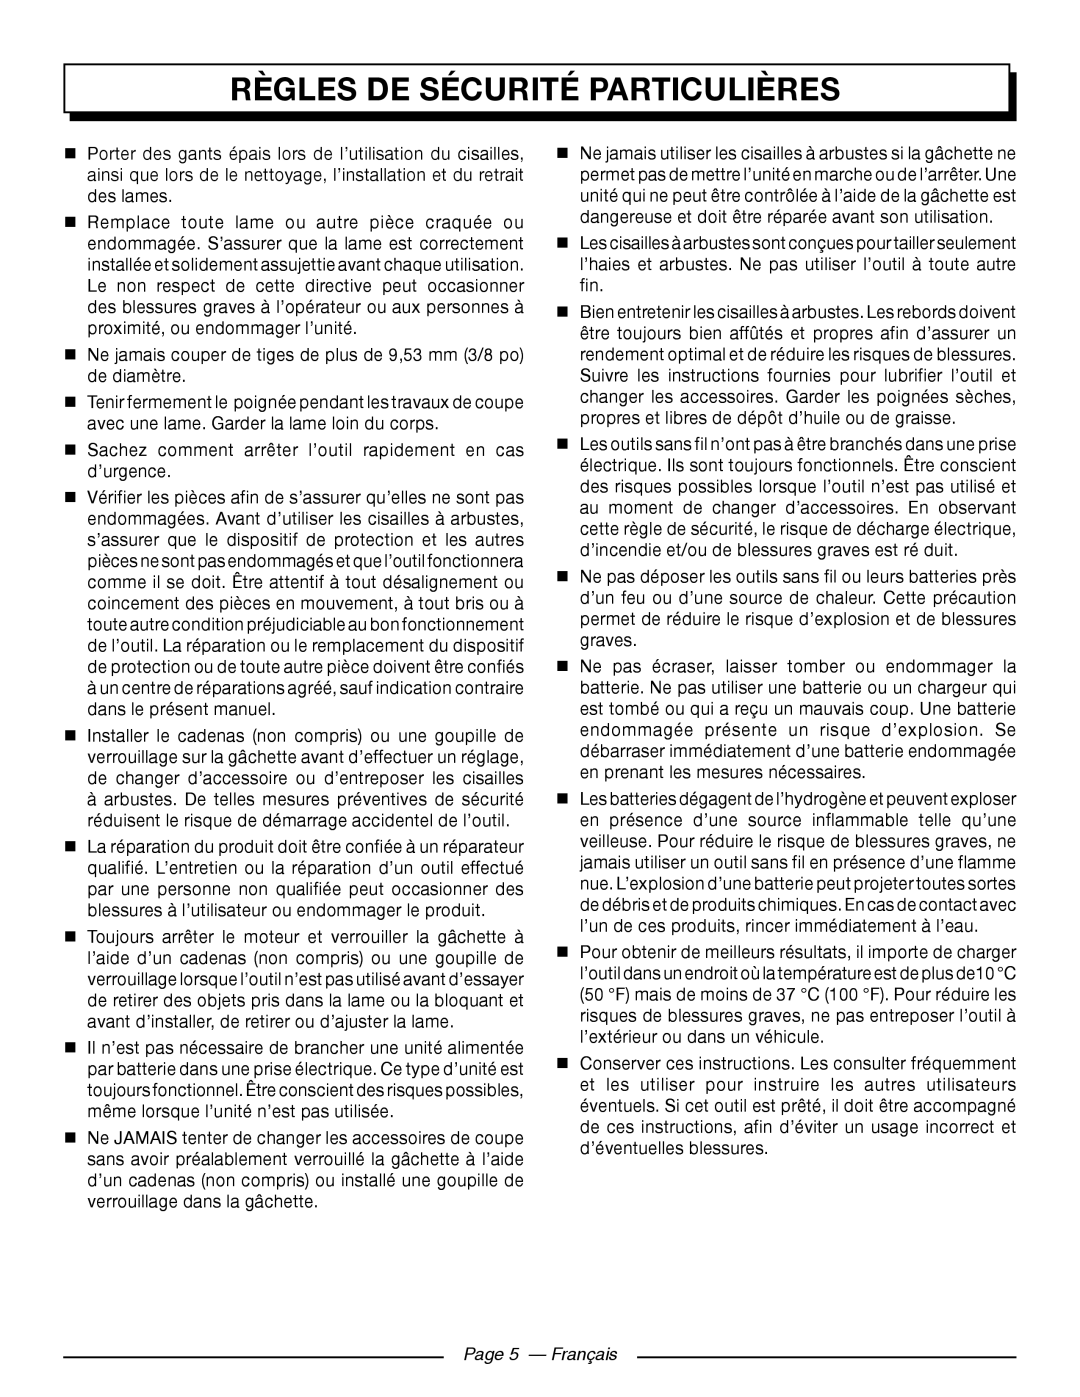 Homelite UT44171 manuel dutilisation règles de sécurité particulières, Page 5 - Français 